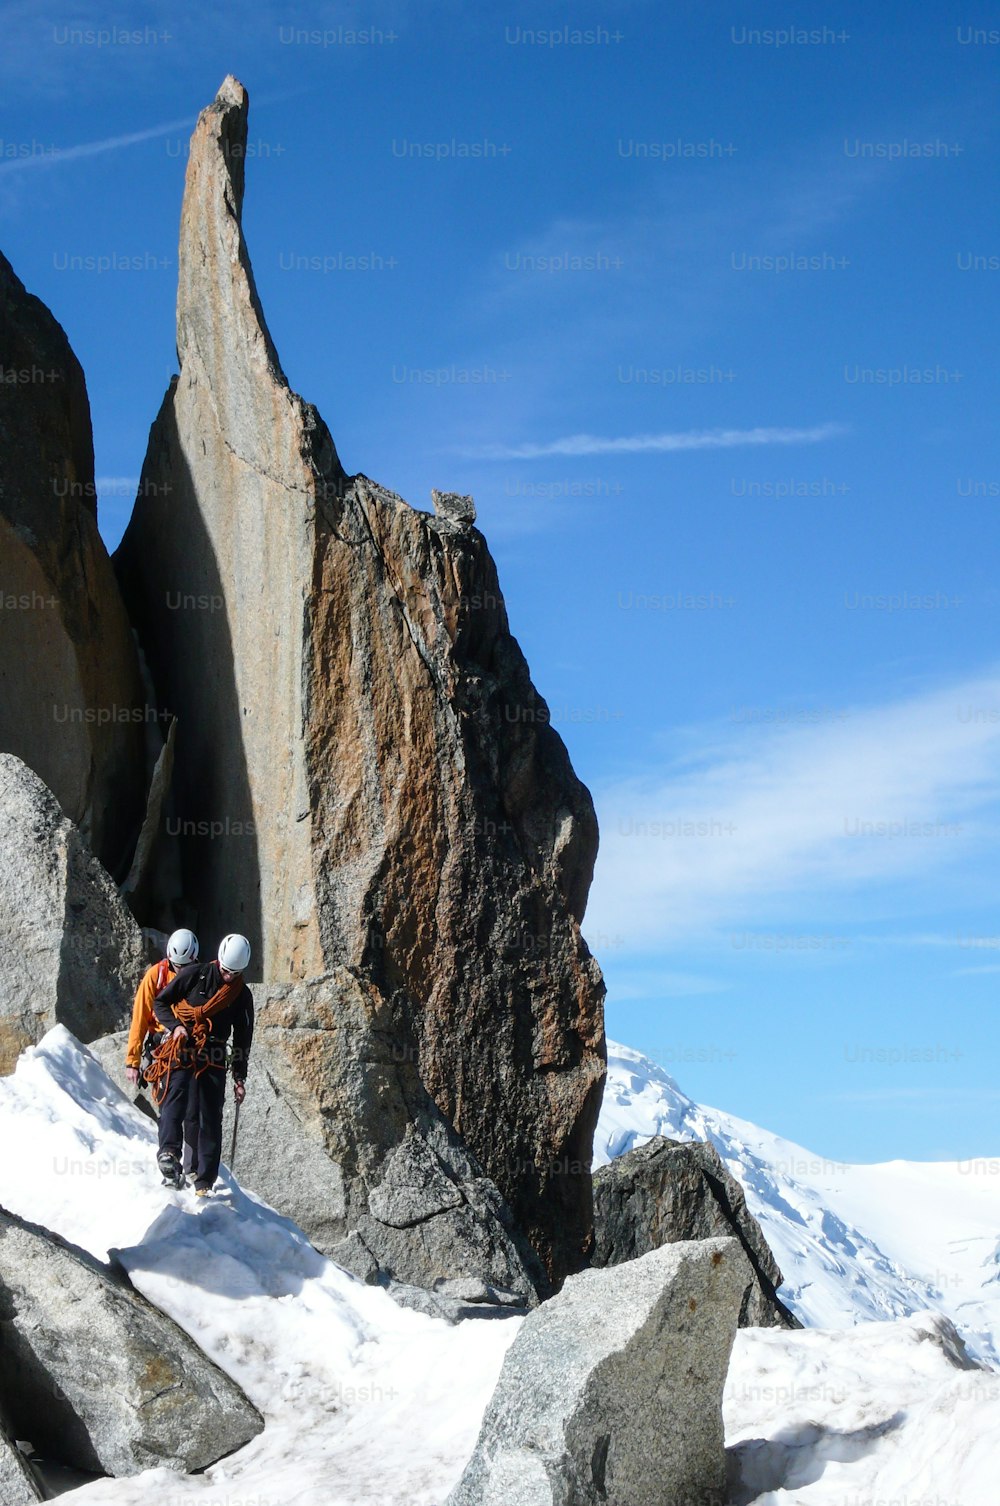 guia de montanha e um cliente do sexo masculino em um cume rochoso indo em direção a um cume alto nos Alpes franceses perto de Chamonix em um belo dia de verão